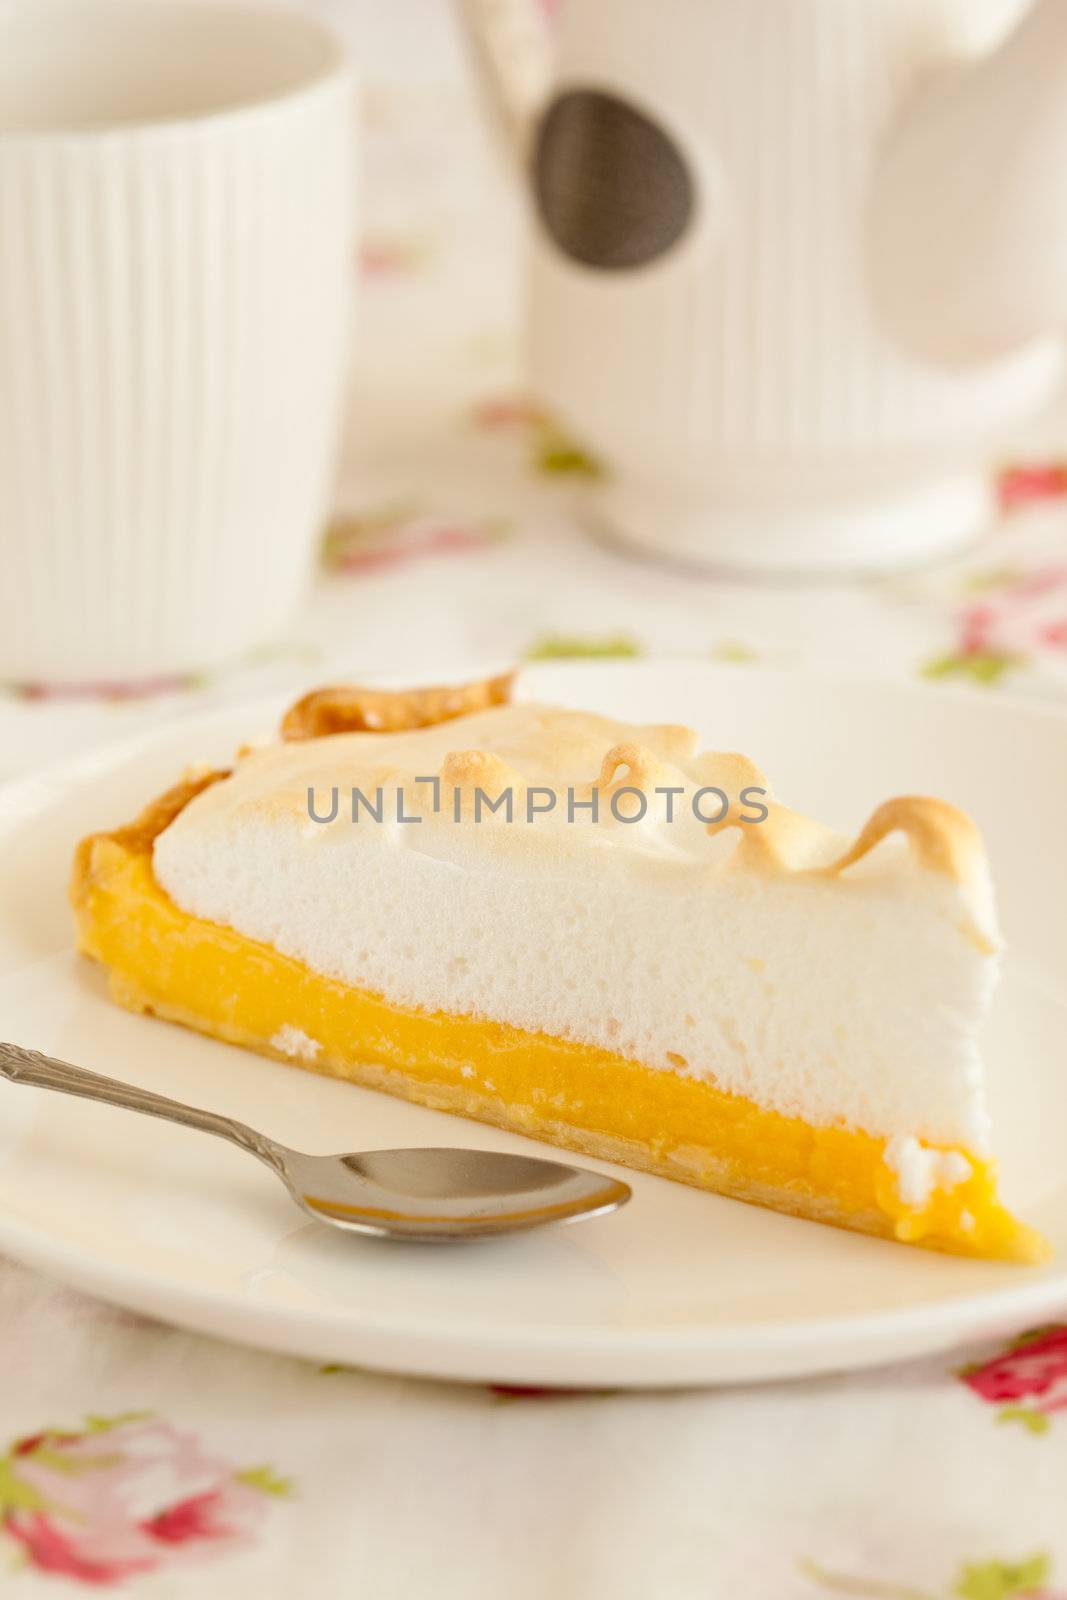 Lemon meringue pie by Fotosmurf